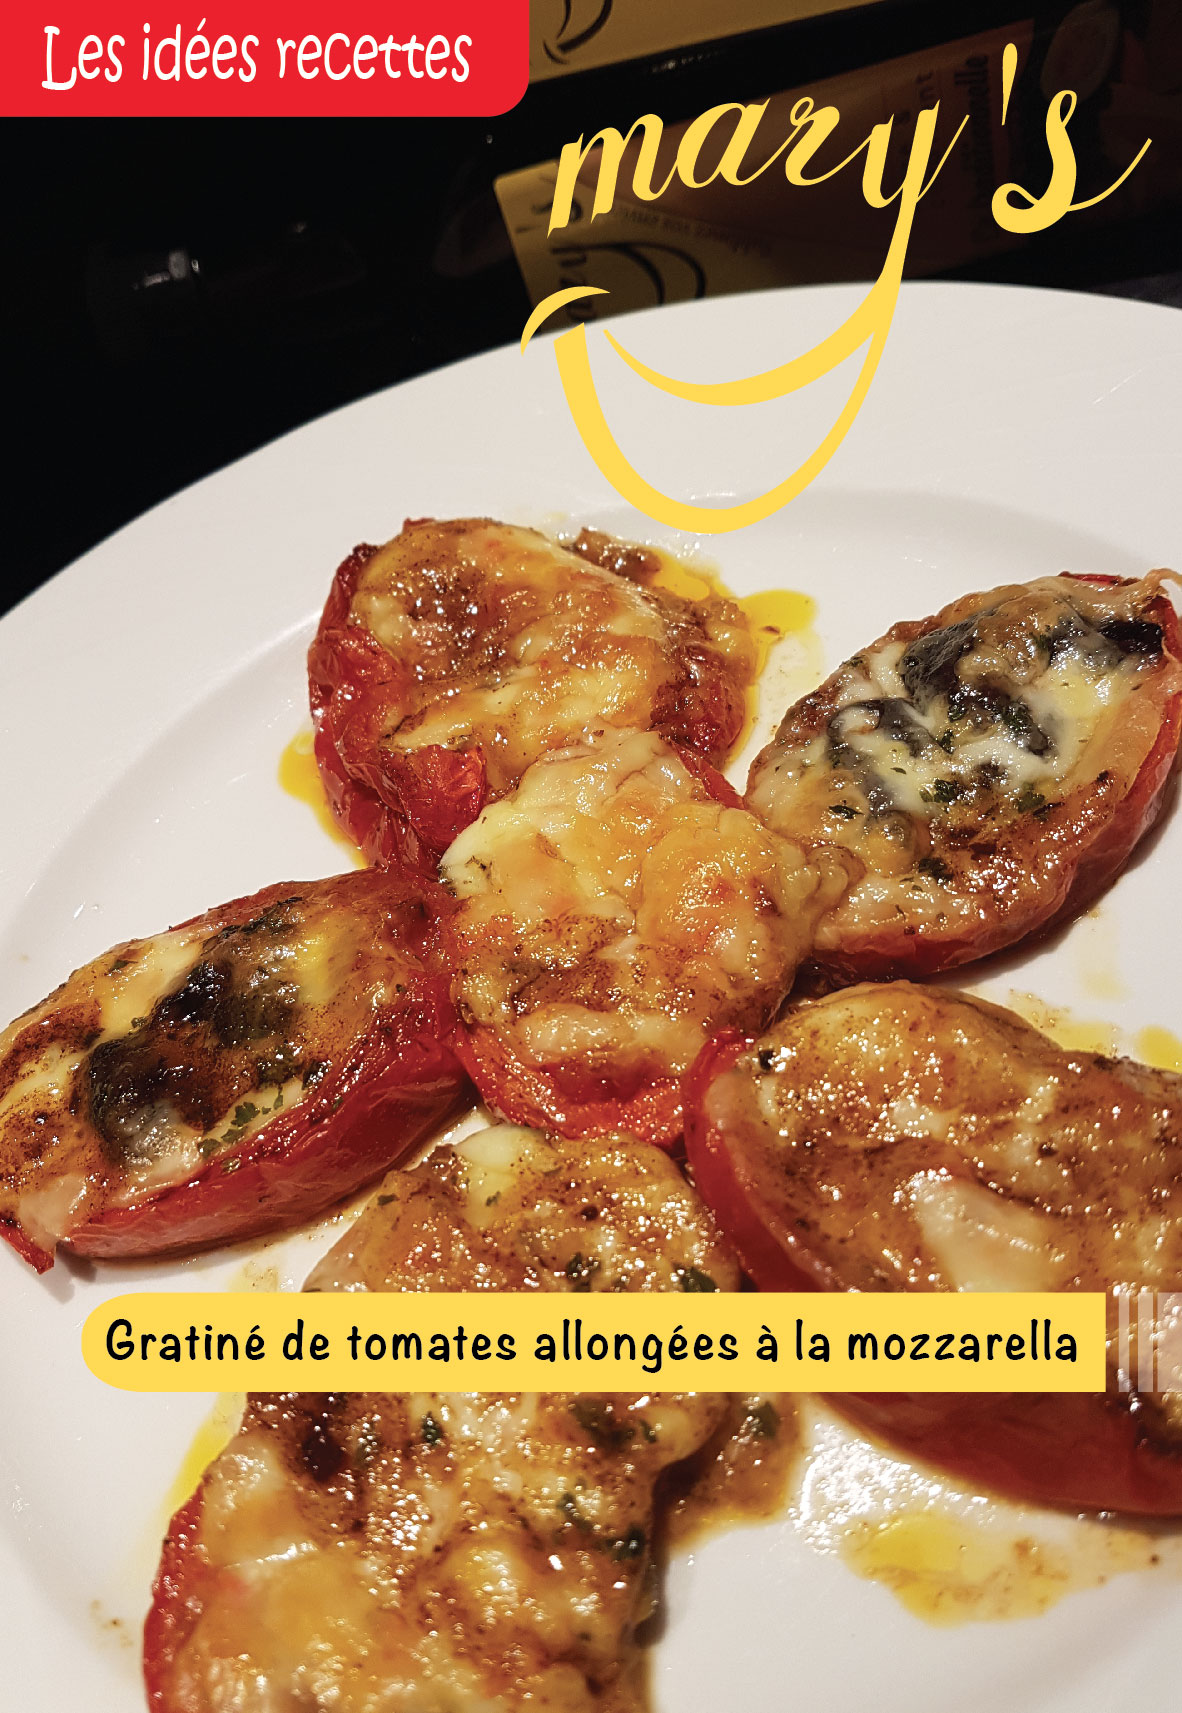 Gratiné de tomates allongées à la mozzarella